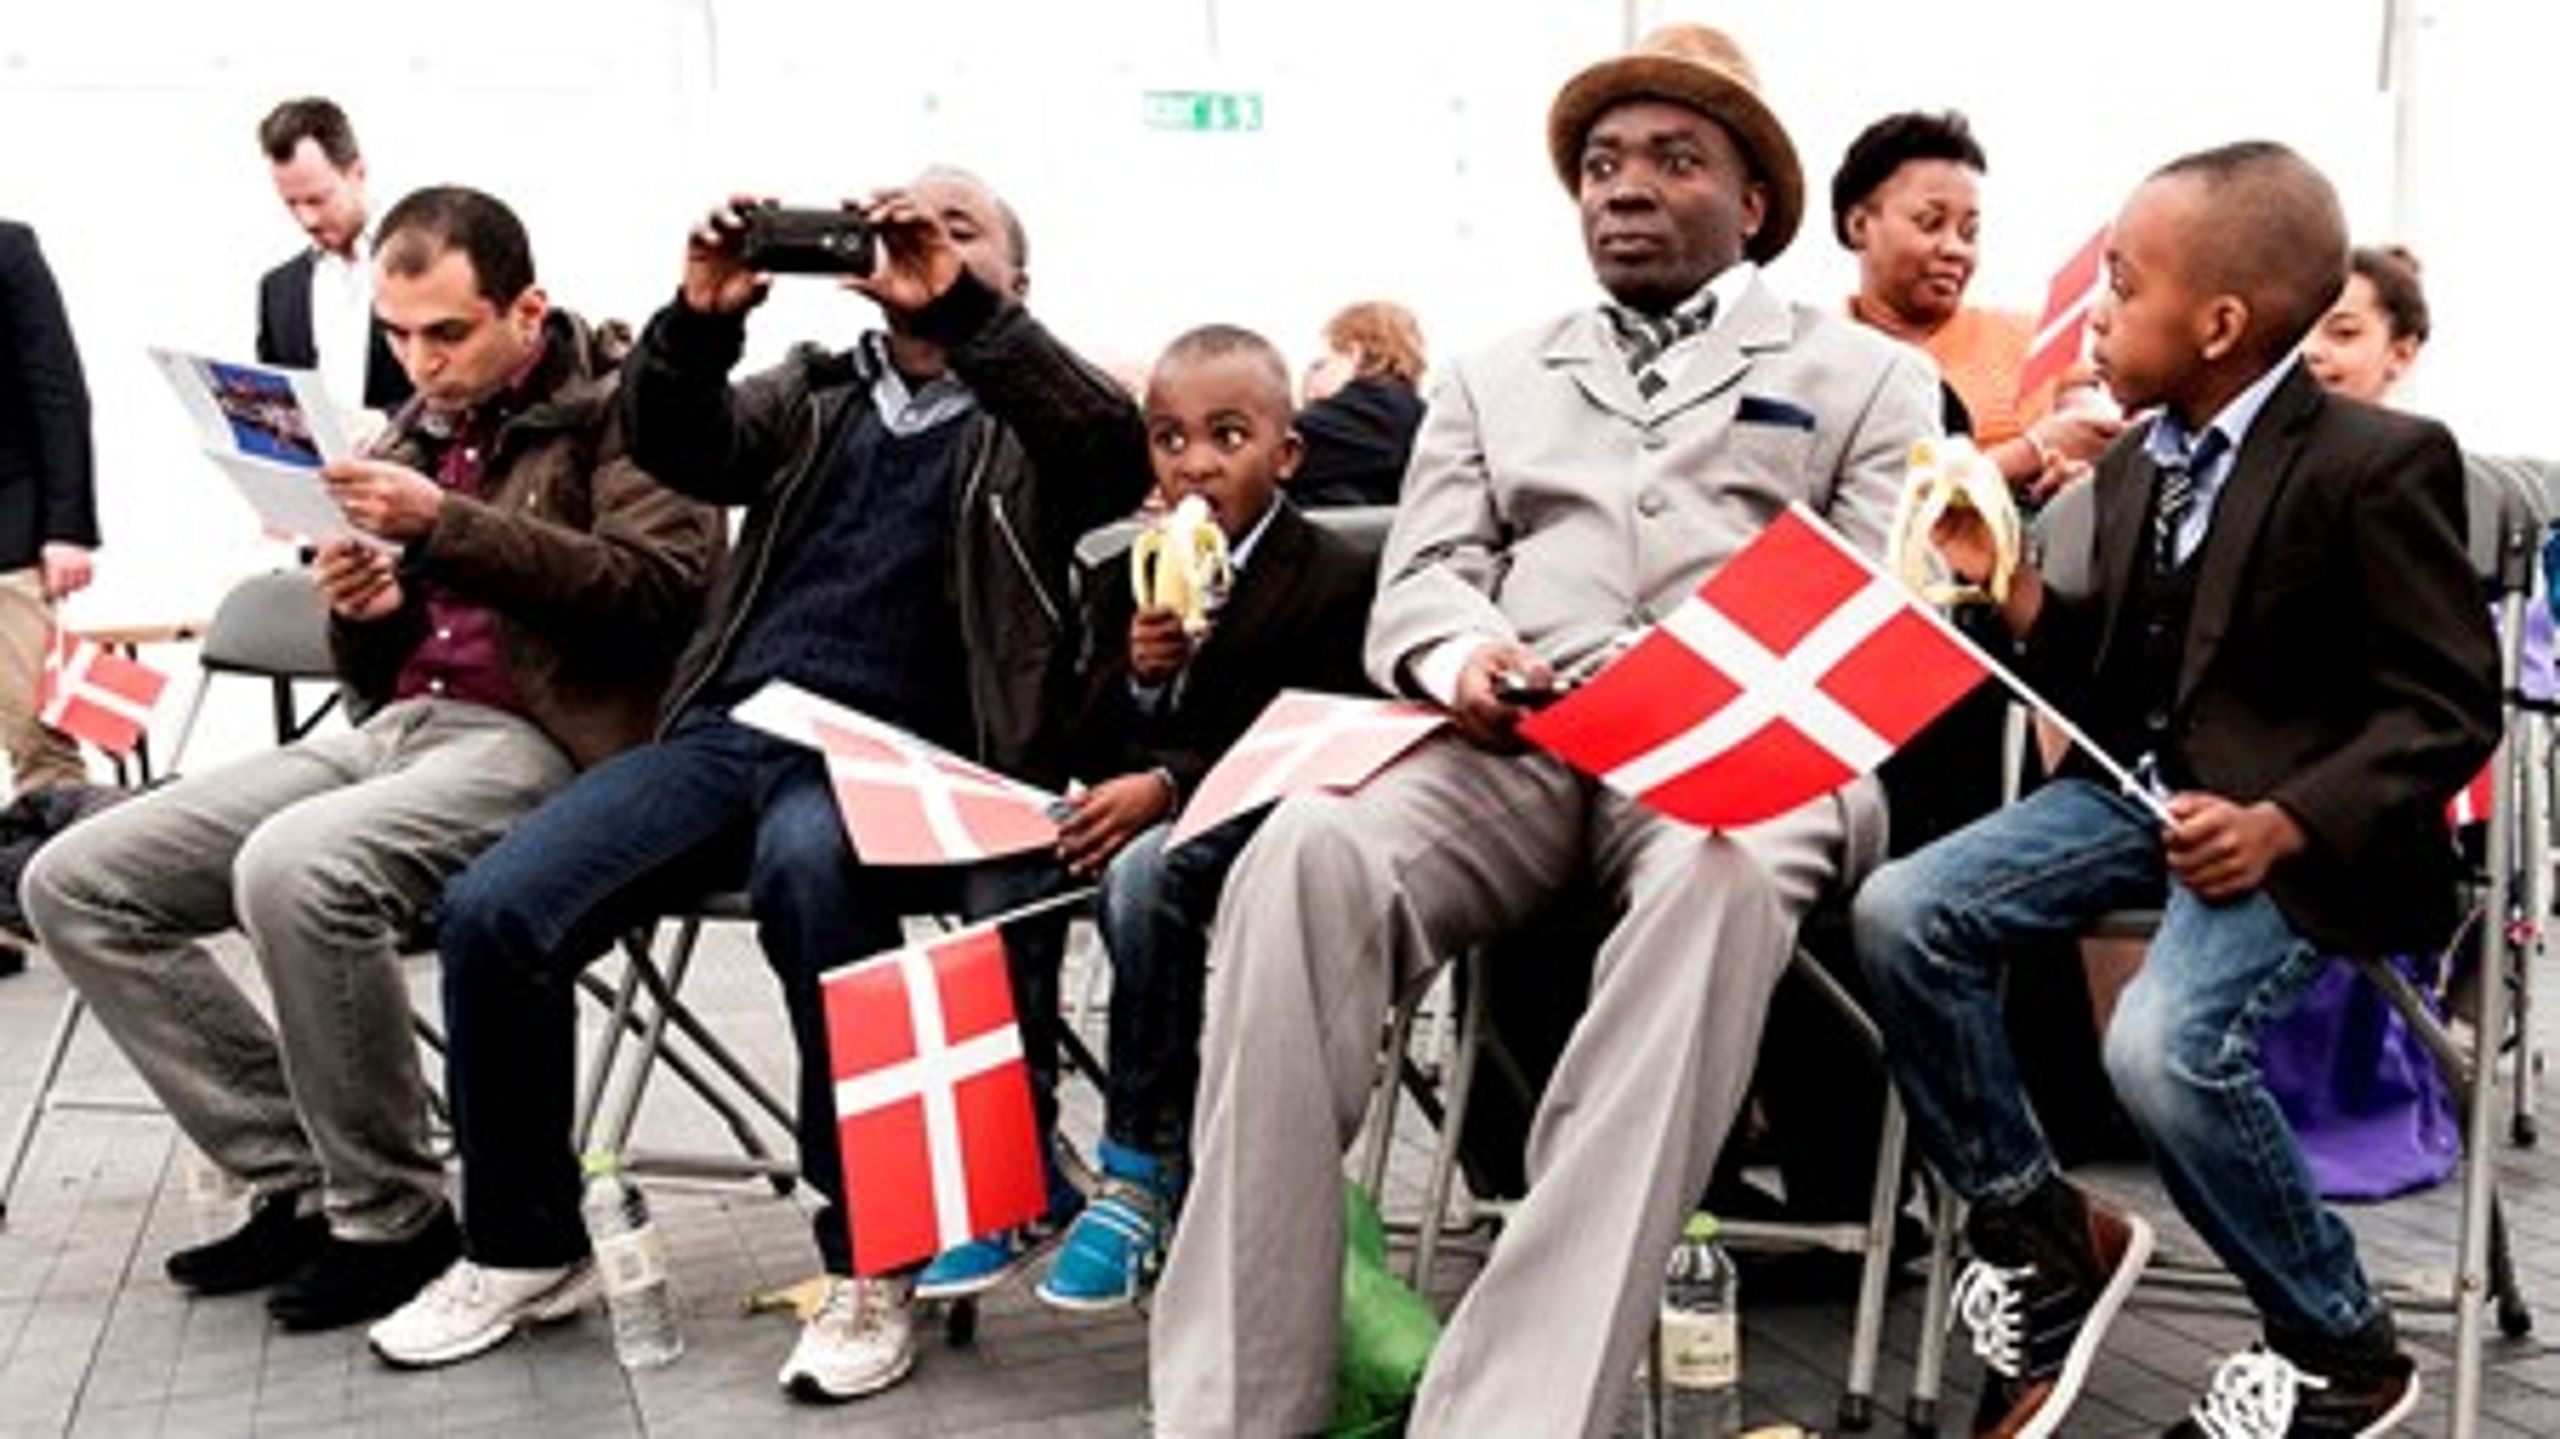 Den årlige statsborgerskabsdag blev søndag holdt for tiende gang&nbsp;på Christiansborg. Her blev alle dem, som i 2014 fik tildelt dansk statsborgerskab, fejret. Står det til et flertal af danskerne, skal statsborgerskabet dog gøres betinget de første ti år.&nbsp;